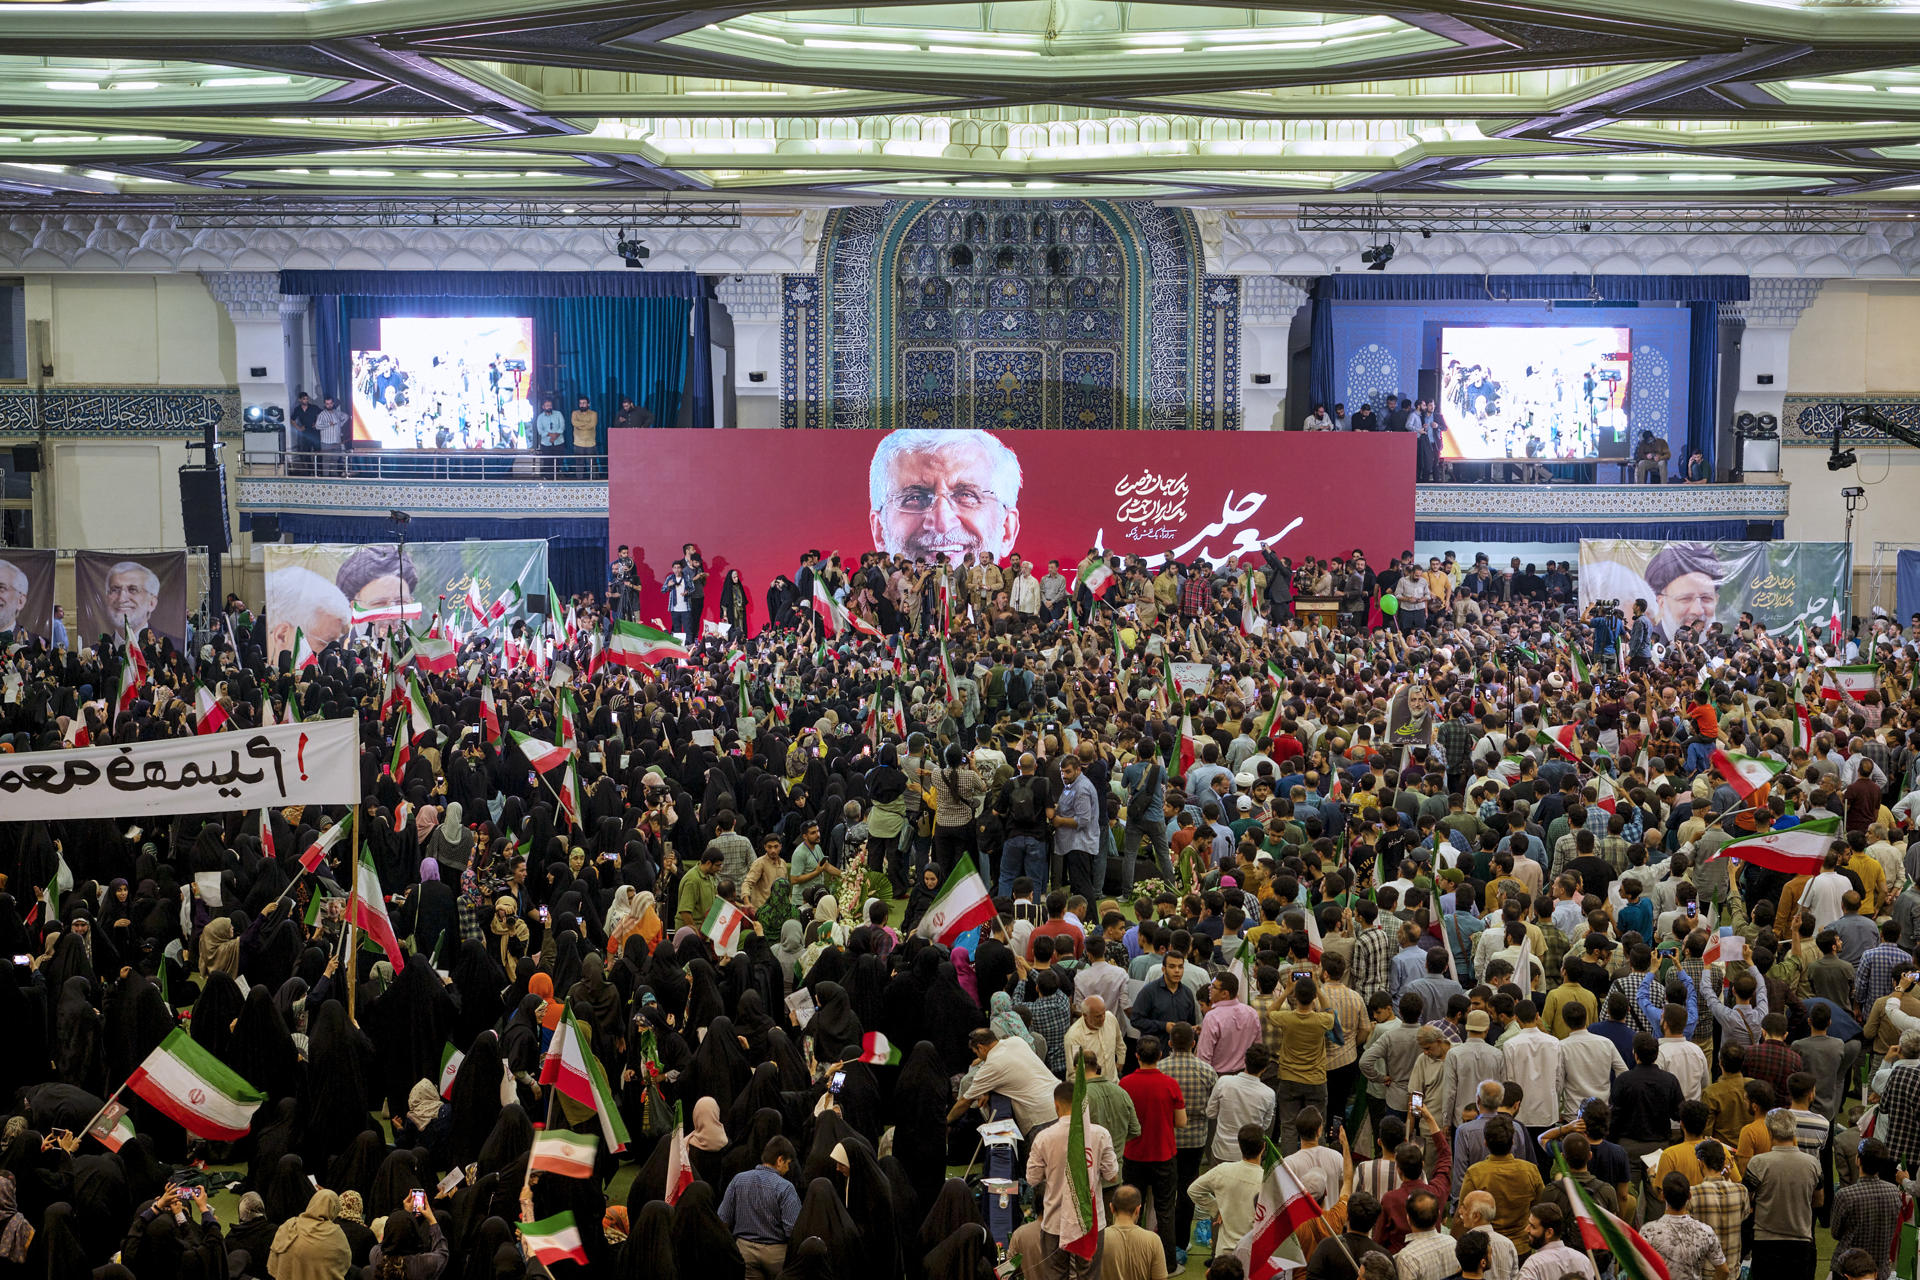 Una multitud participa en un mitin del candidato a la presidencia iraní el ultraconservador Saeed Jalili en el último día de campaña en Teherán. EFE/Jaime León
